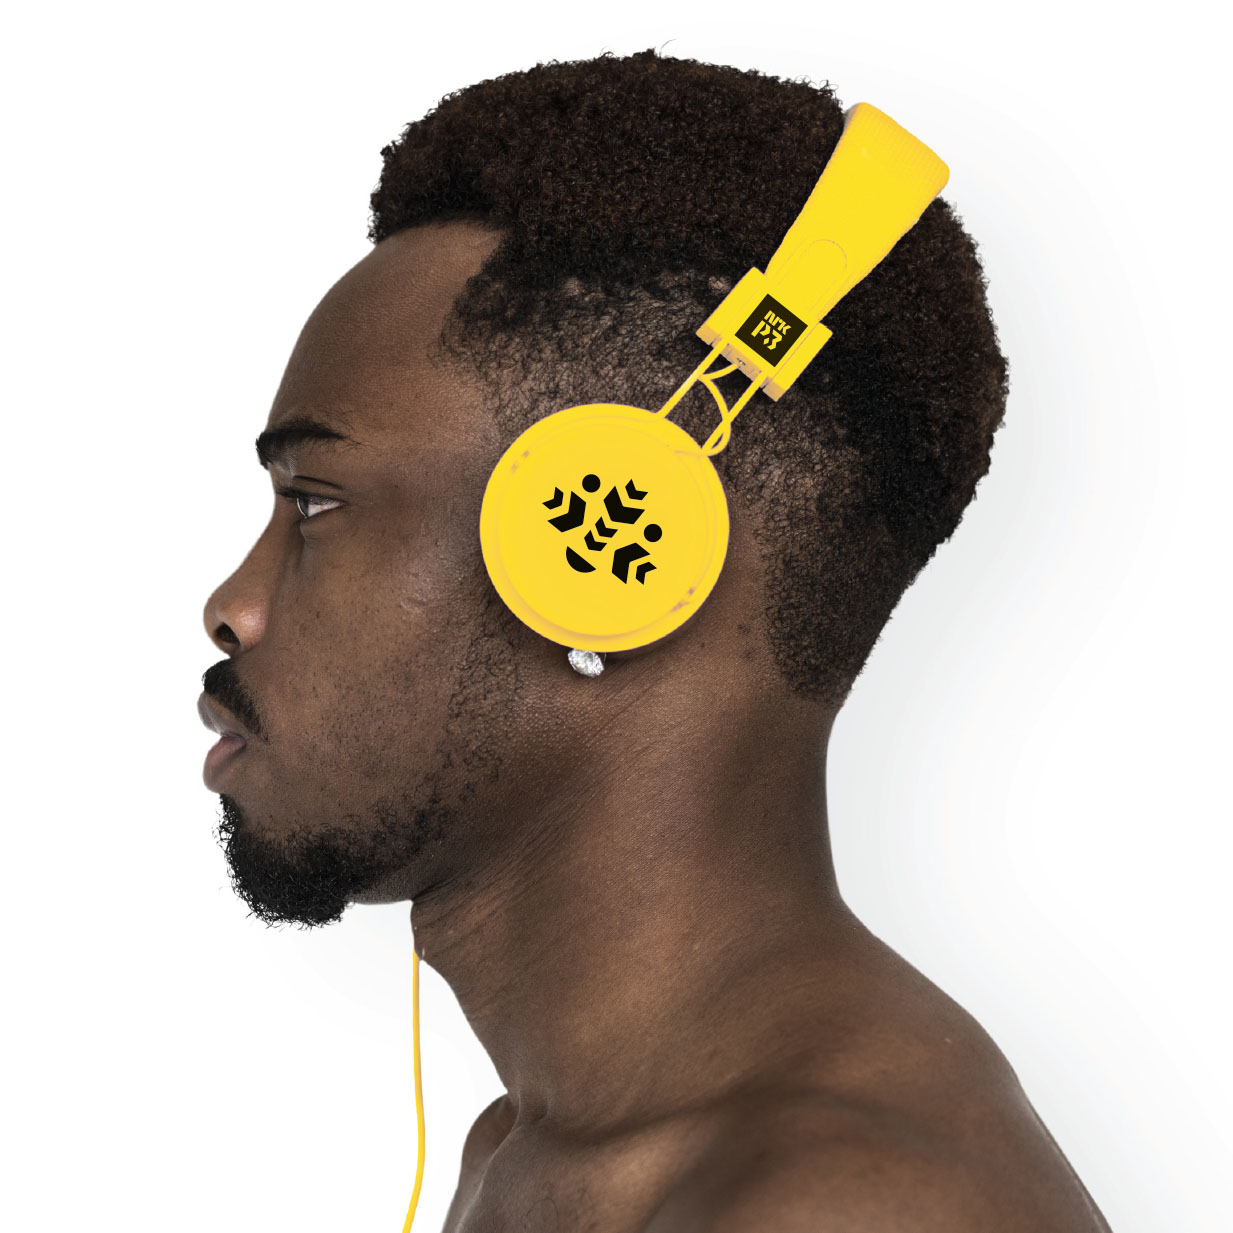 Bilde av hodetelefoner på en mann, med P3 logo